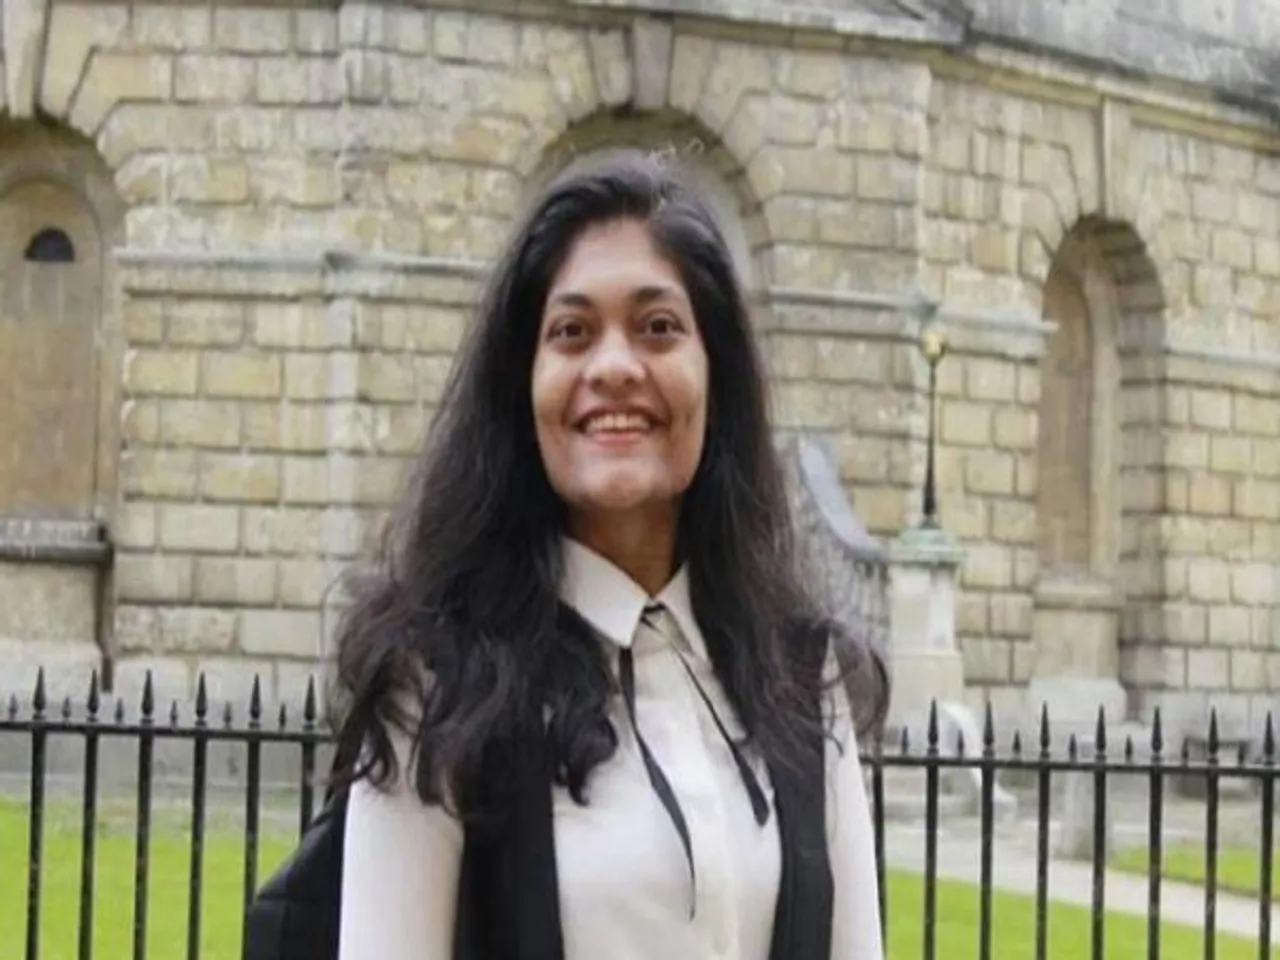 "A Traumatic Learning Curve": Rashmi Samant On Stepping Down As Oxford SU President